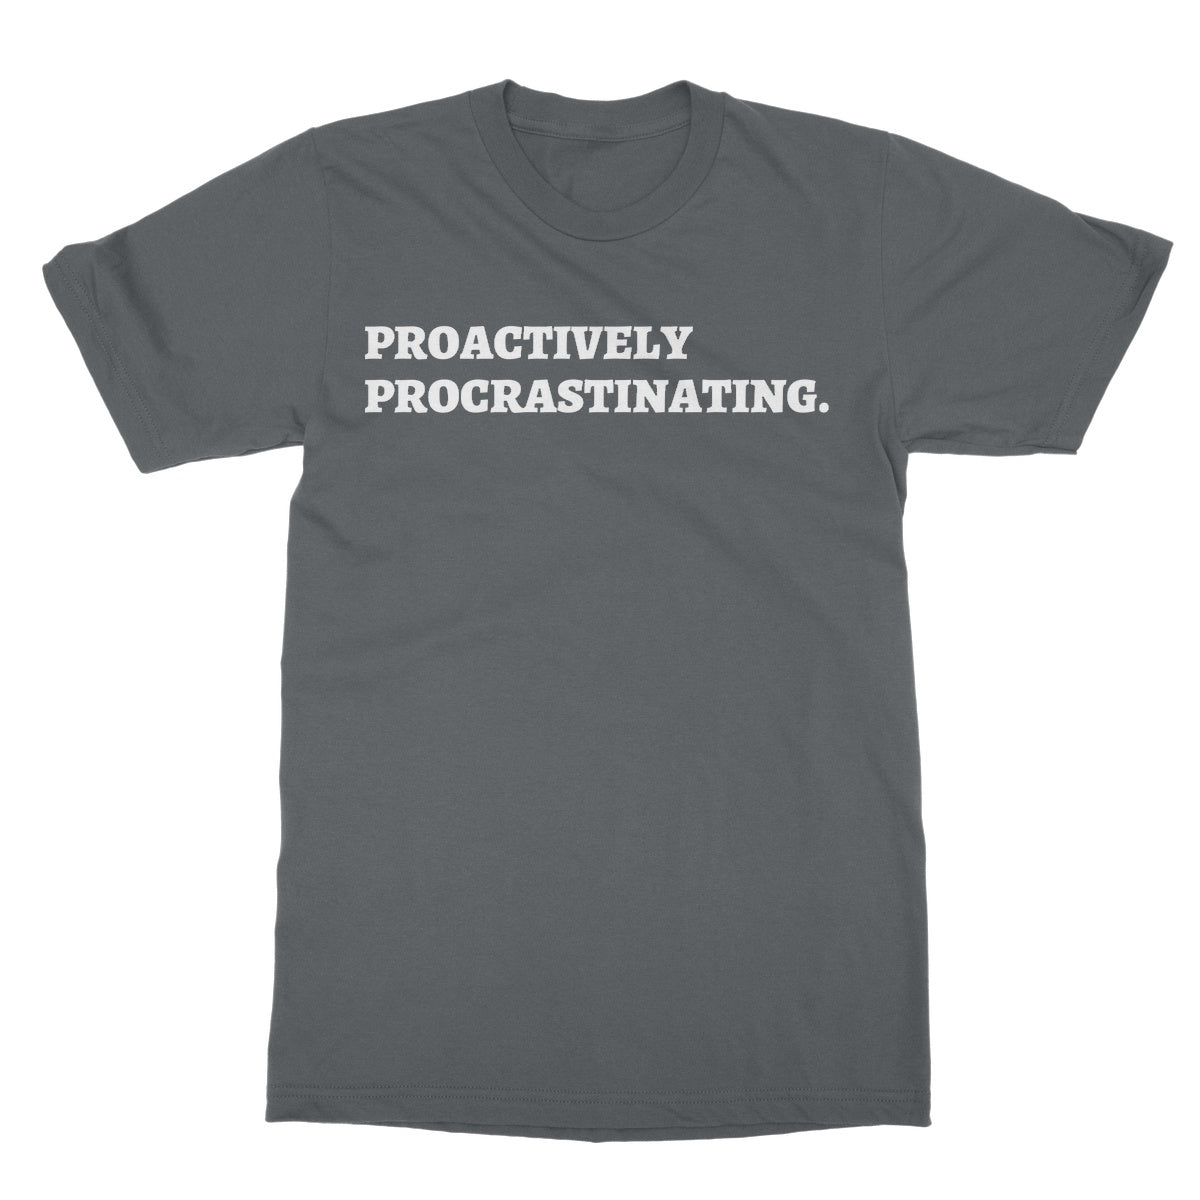 proactively procrastinating t shirt grey